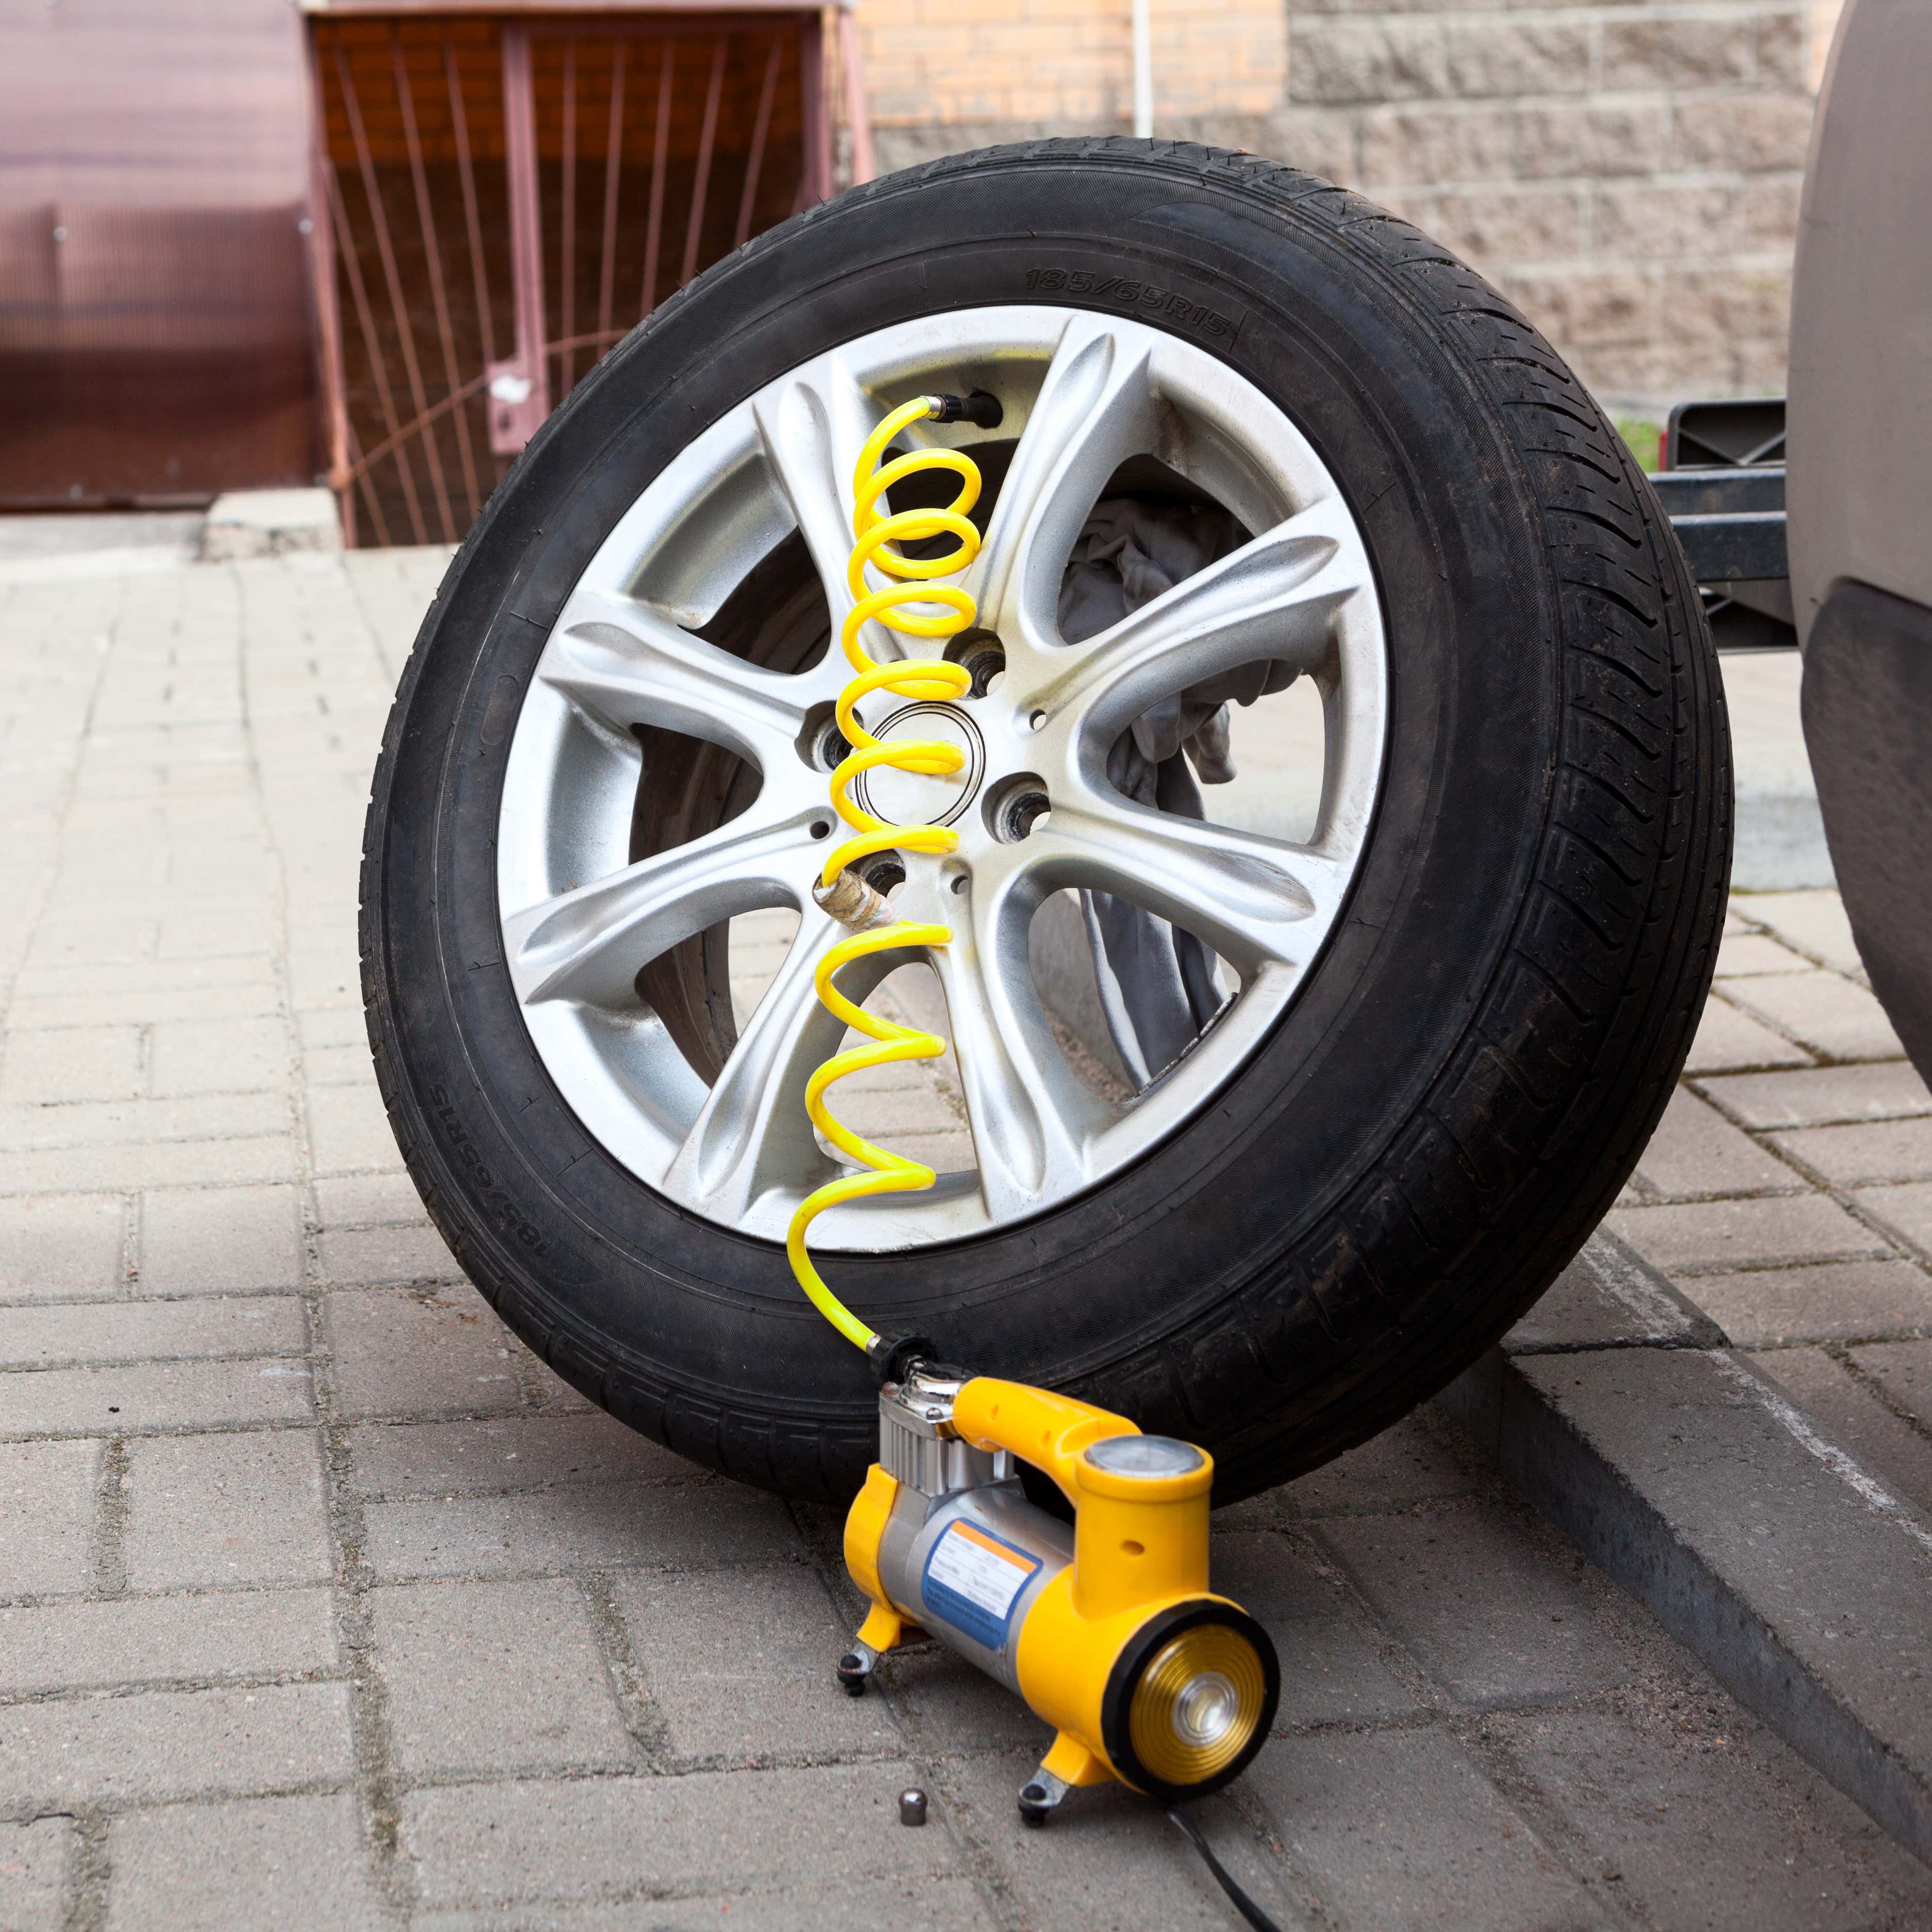 一个黄色的轮胎打气筒正在给车的一个轮胎打气。